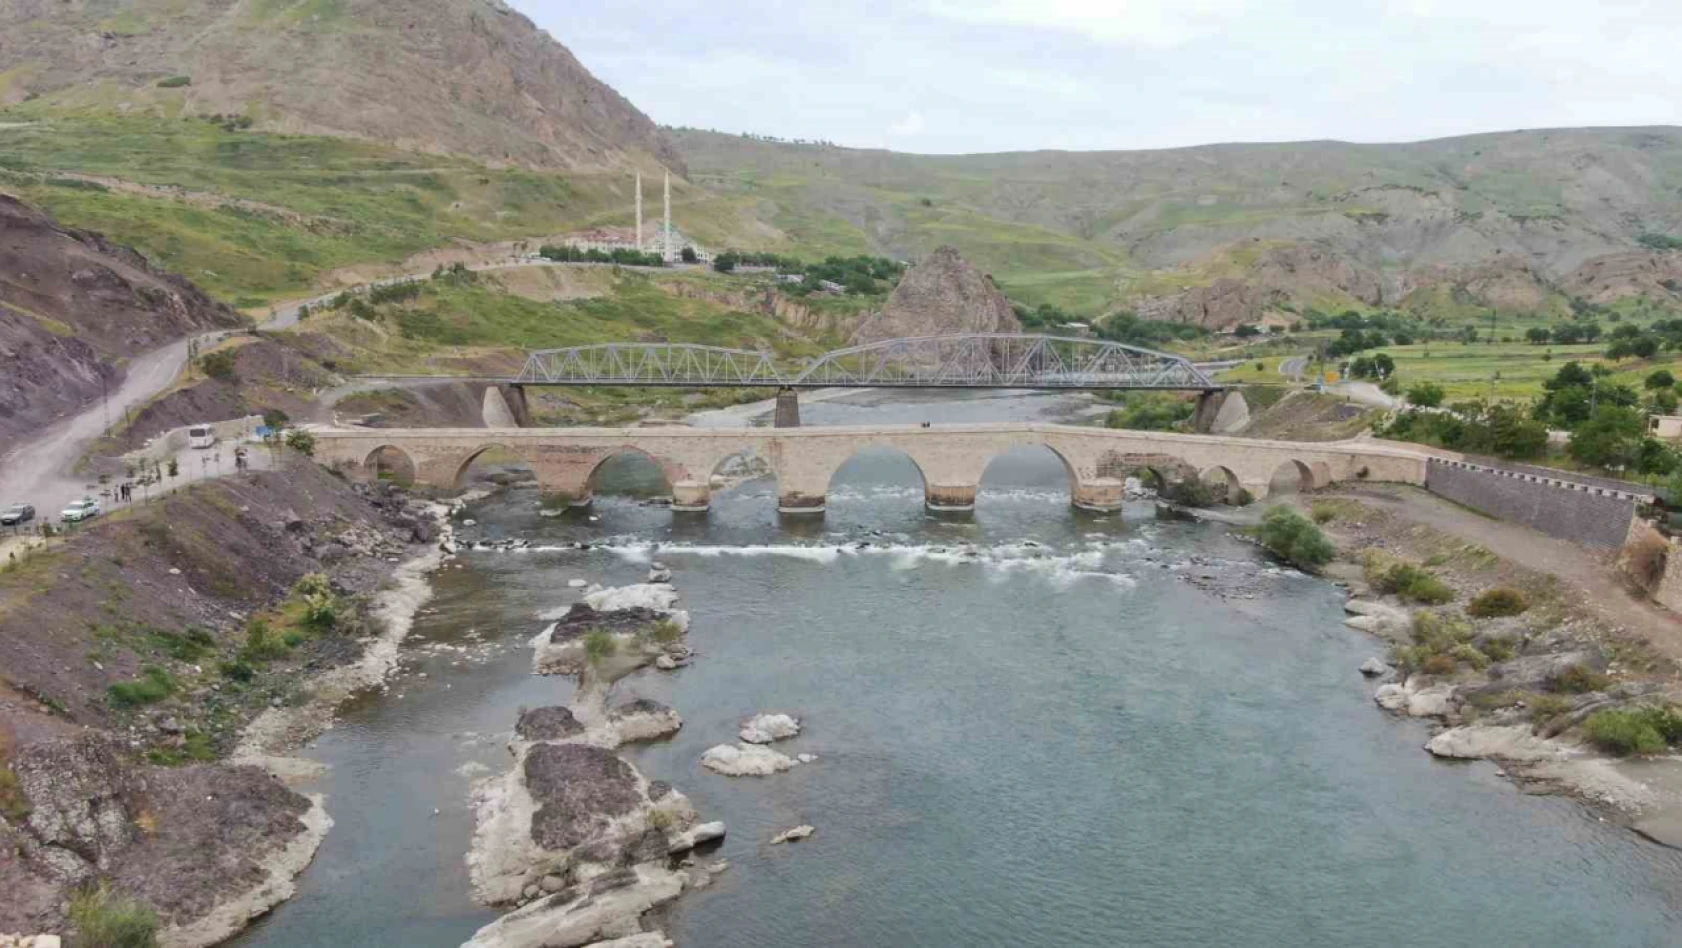 Türkiye'nin En Prestijli Köprüleri Arasında Gösterilmişti: Ülkenin Dört Bir Yanından Ziyaretçi Geliyor